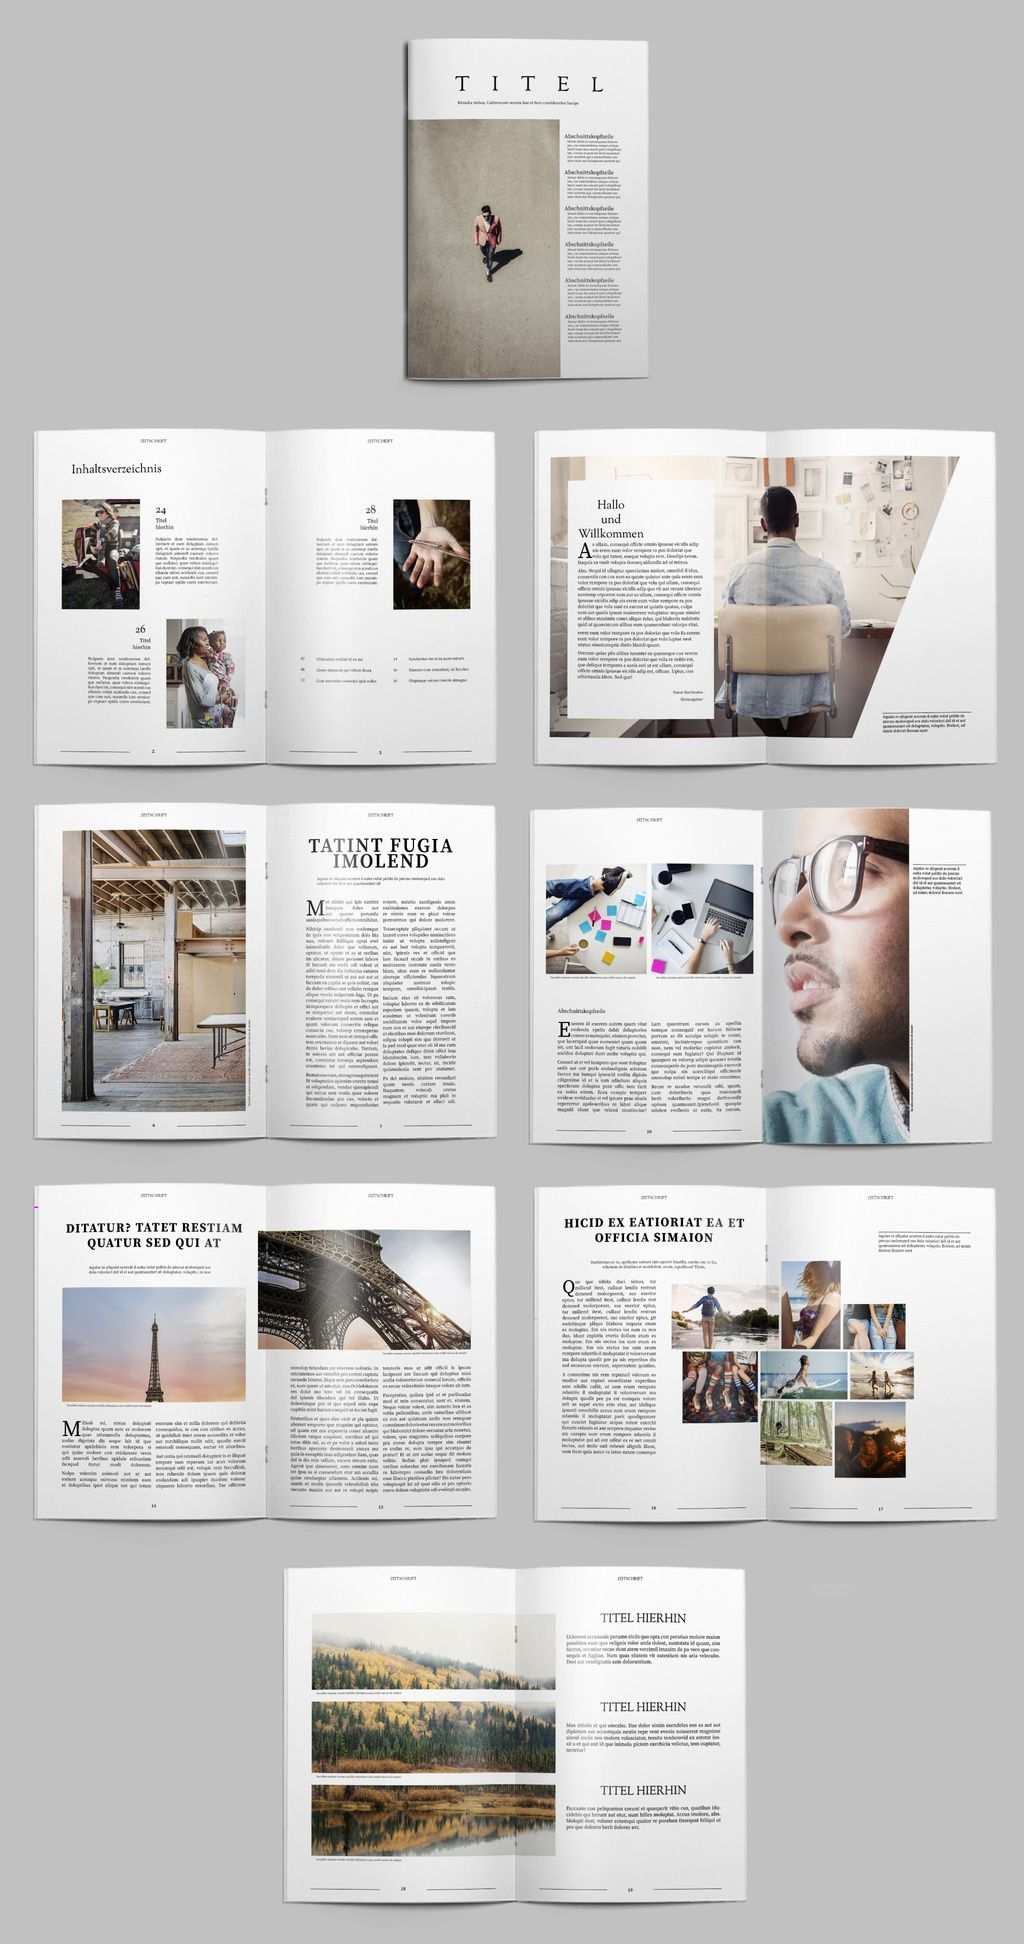 Kostenlose Indesign Vorlagen Fur Magazine Creative Blog By Adobe Indesign Vorlagen Bookletgestaltung Indesign Vorlage